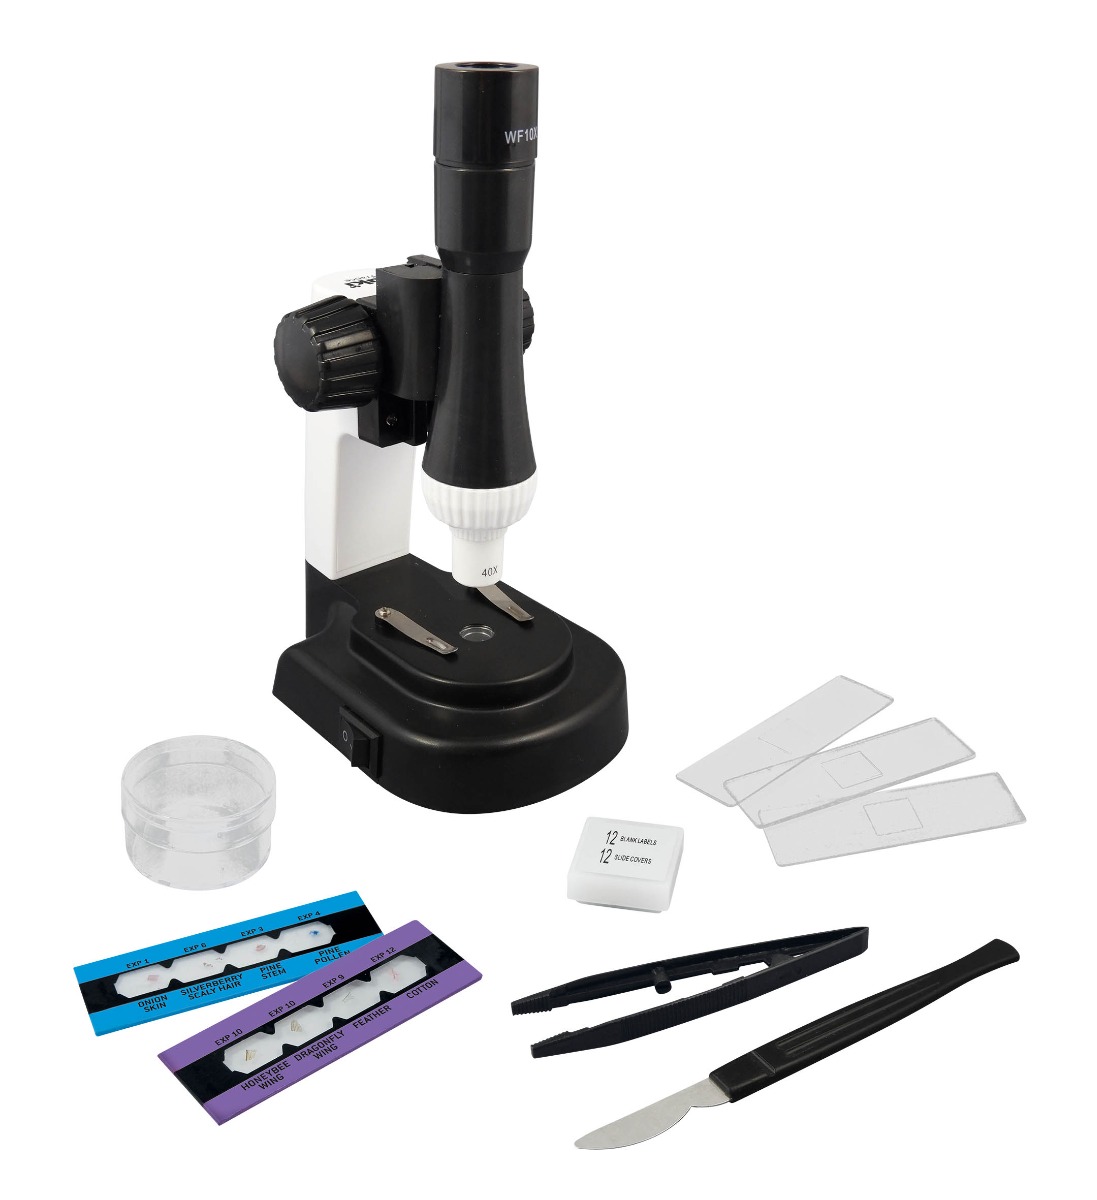 Mikroskop 15 experimentov -V2